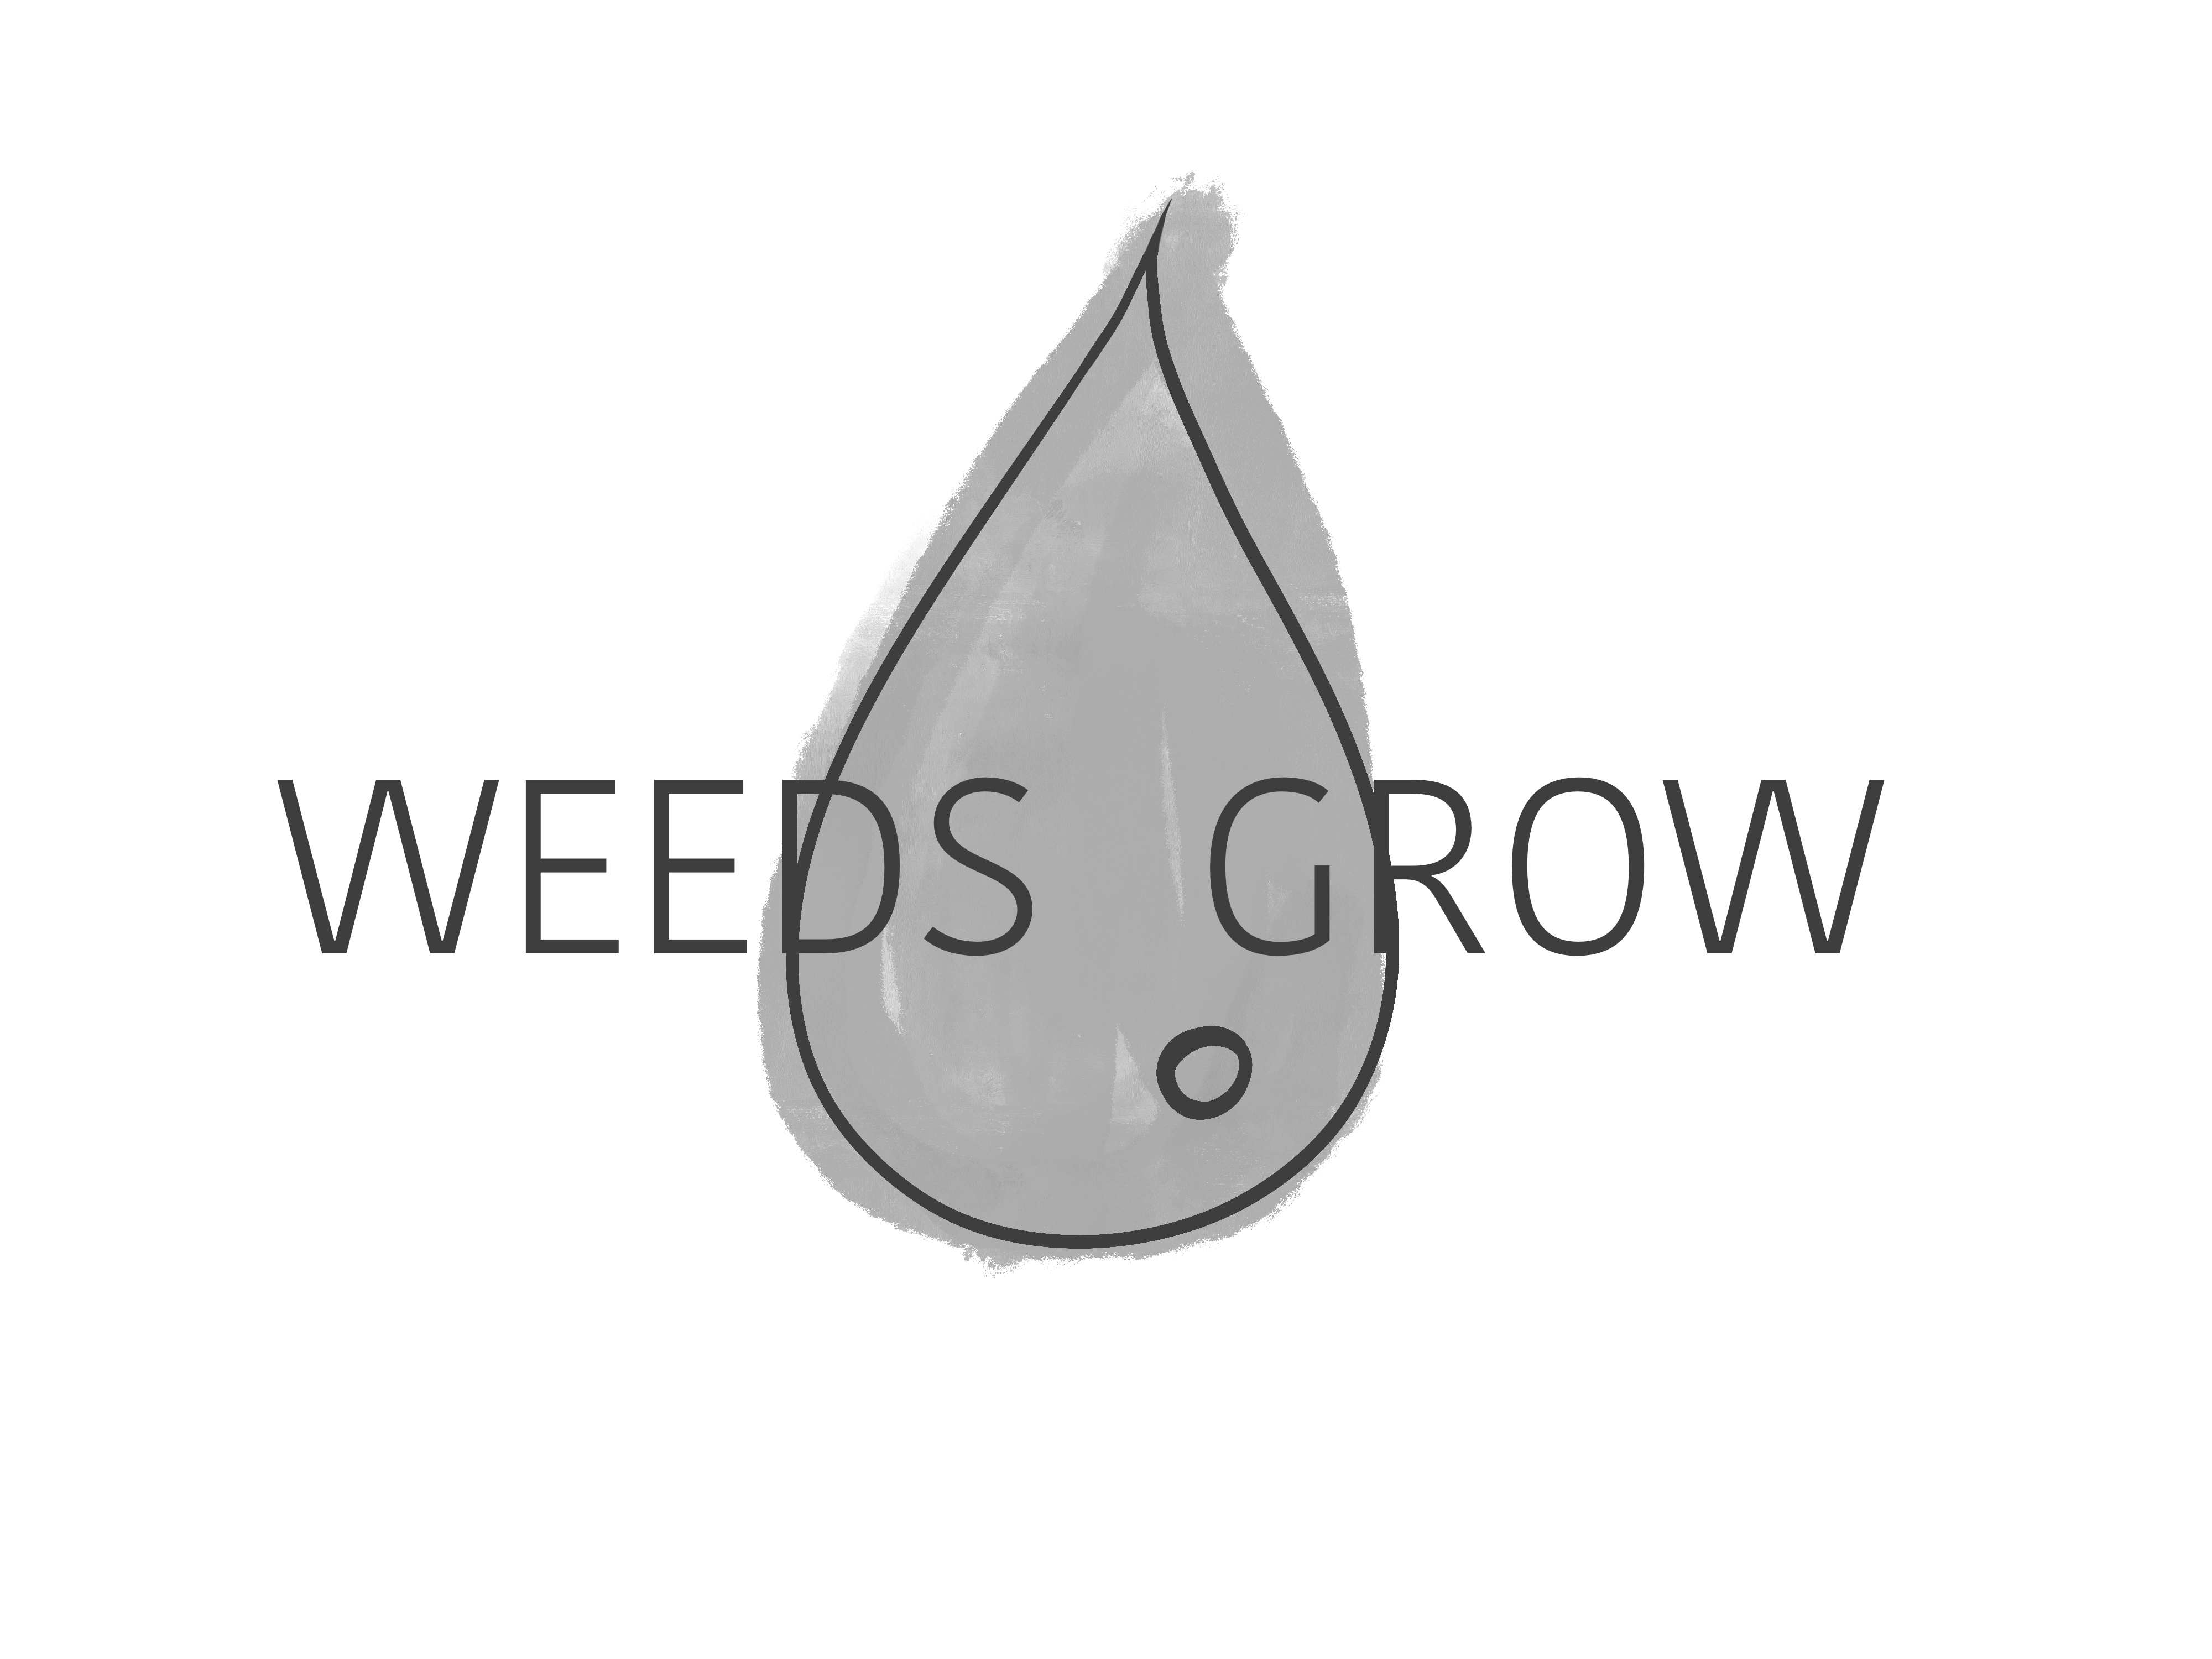 WEEDS GROW